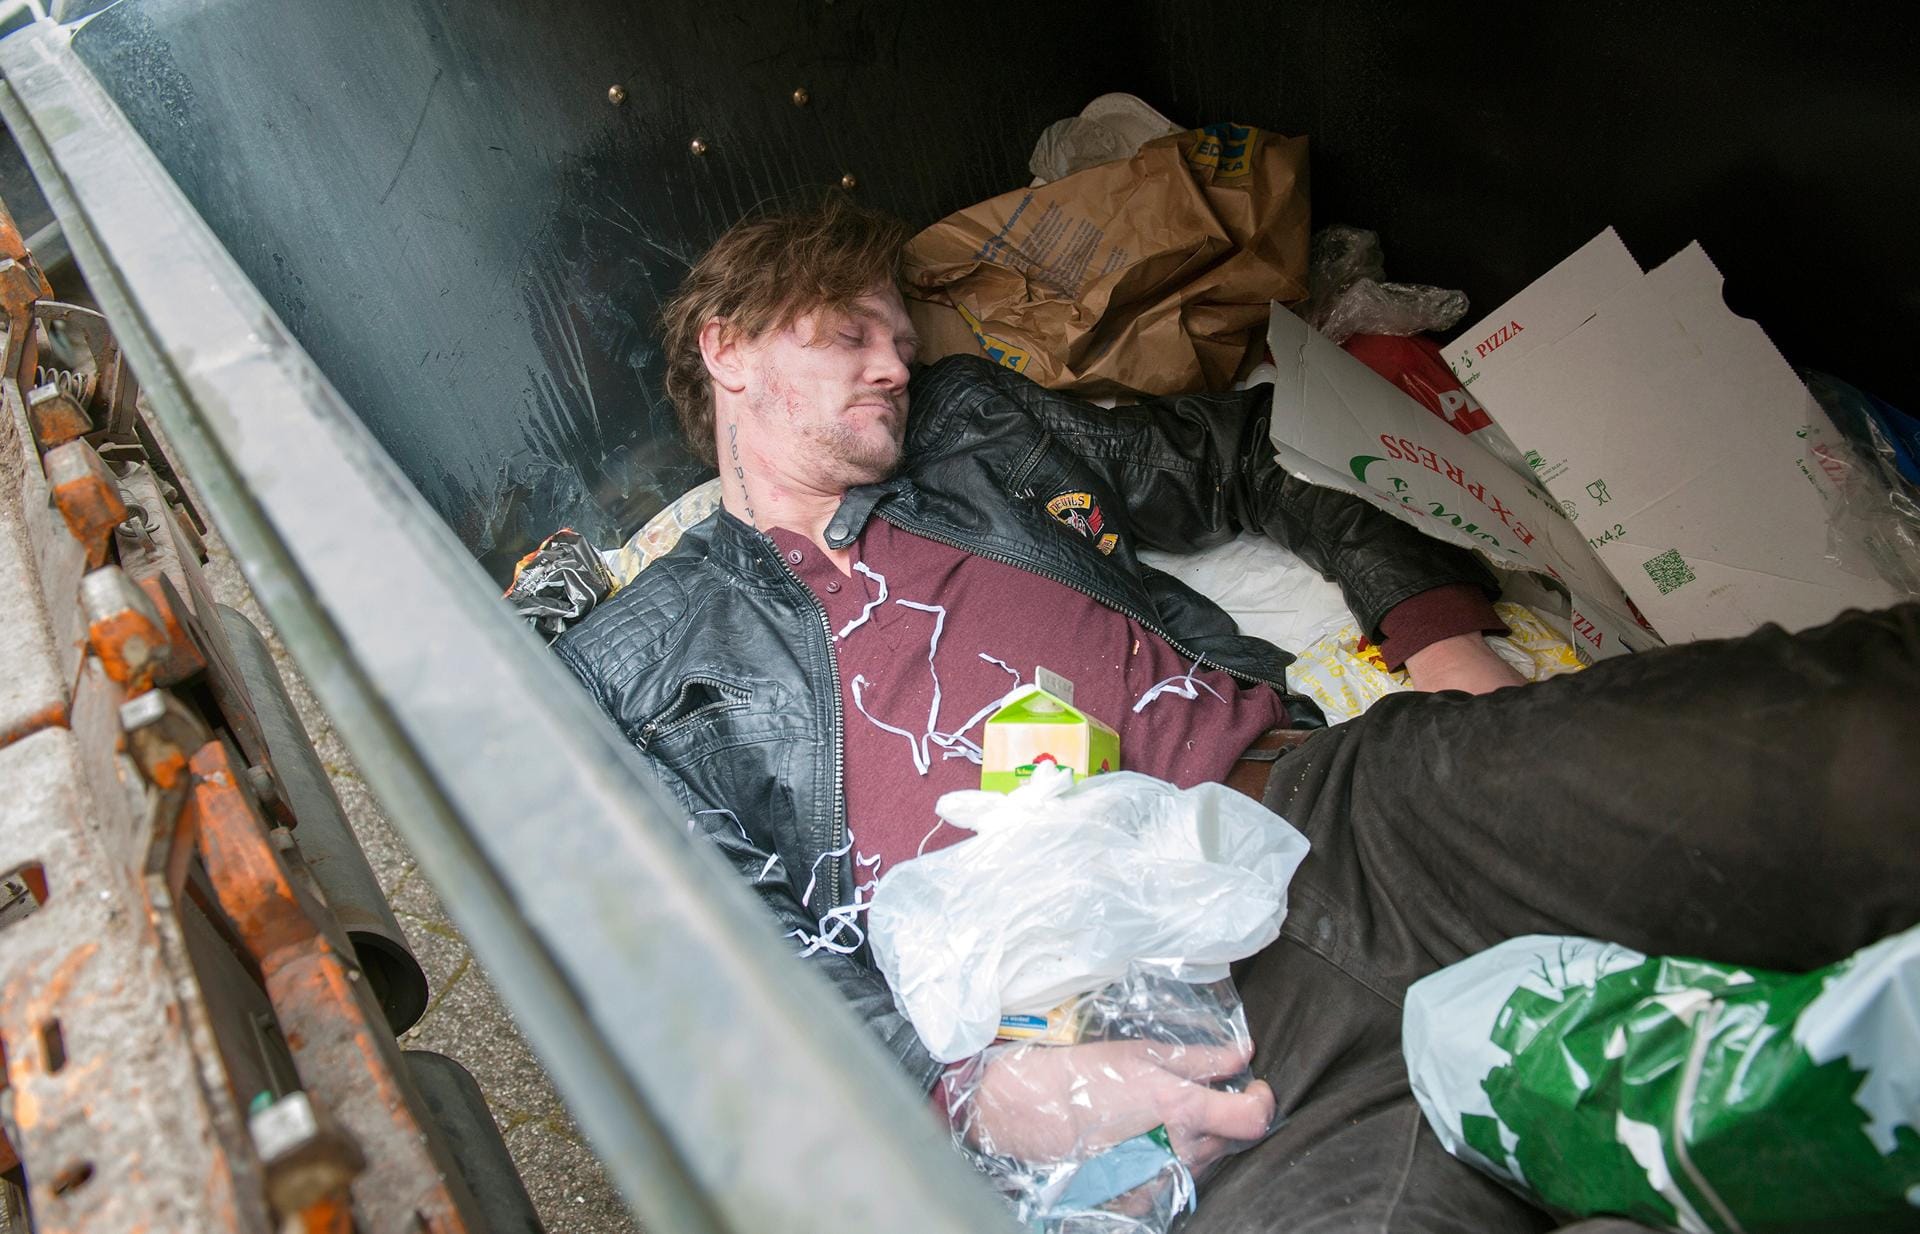 Einen Tag, nachdem er seine Haftstrafe wegen Missbrauchs und Mordes abgesessen hatte, wird Jörg Albrecht tot in einer Mülltonne gefunden.